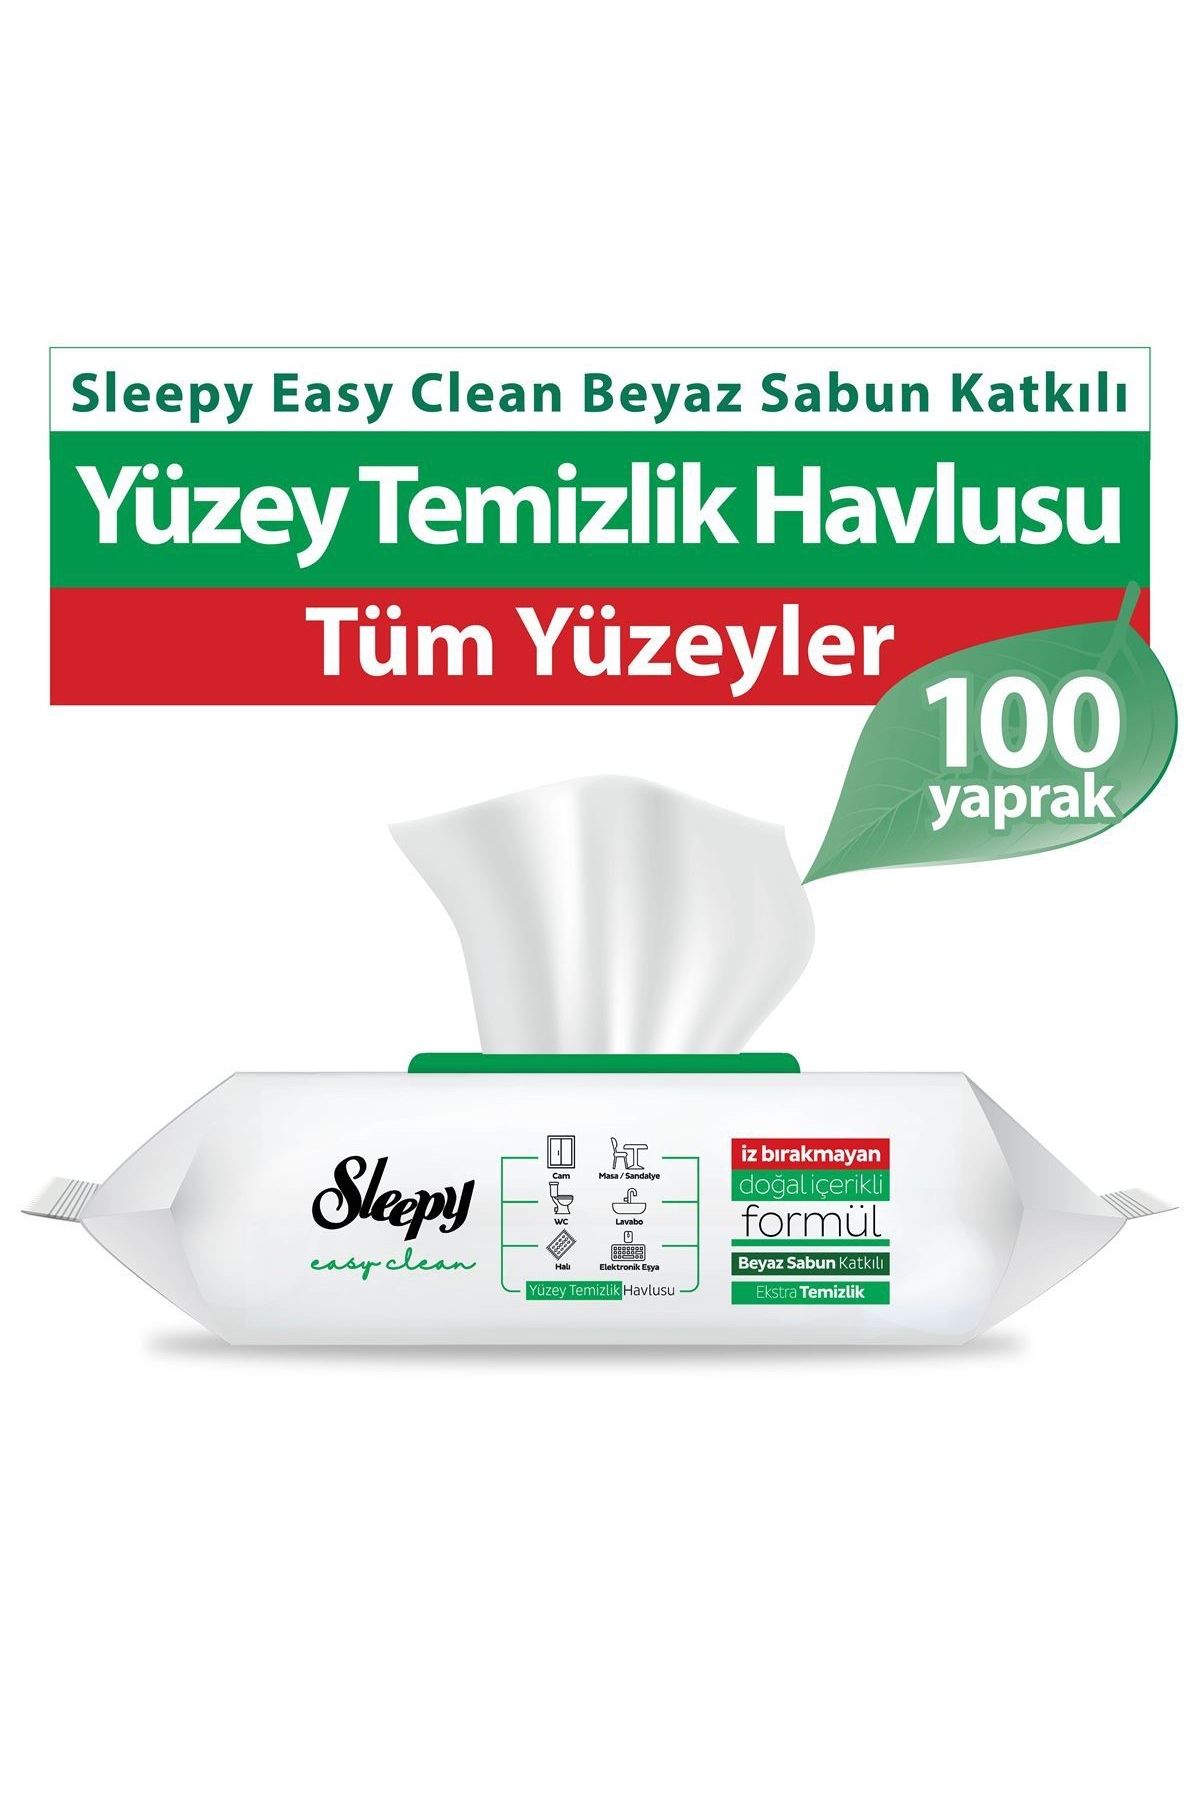 Sleepy Easy Clean Yüzey Temizlik Havlusu (Beyaz Sabun Kokulu) 100'lü